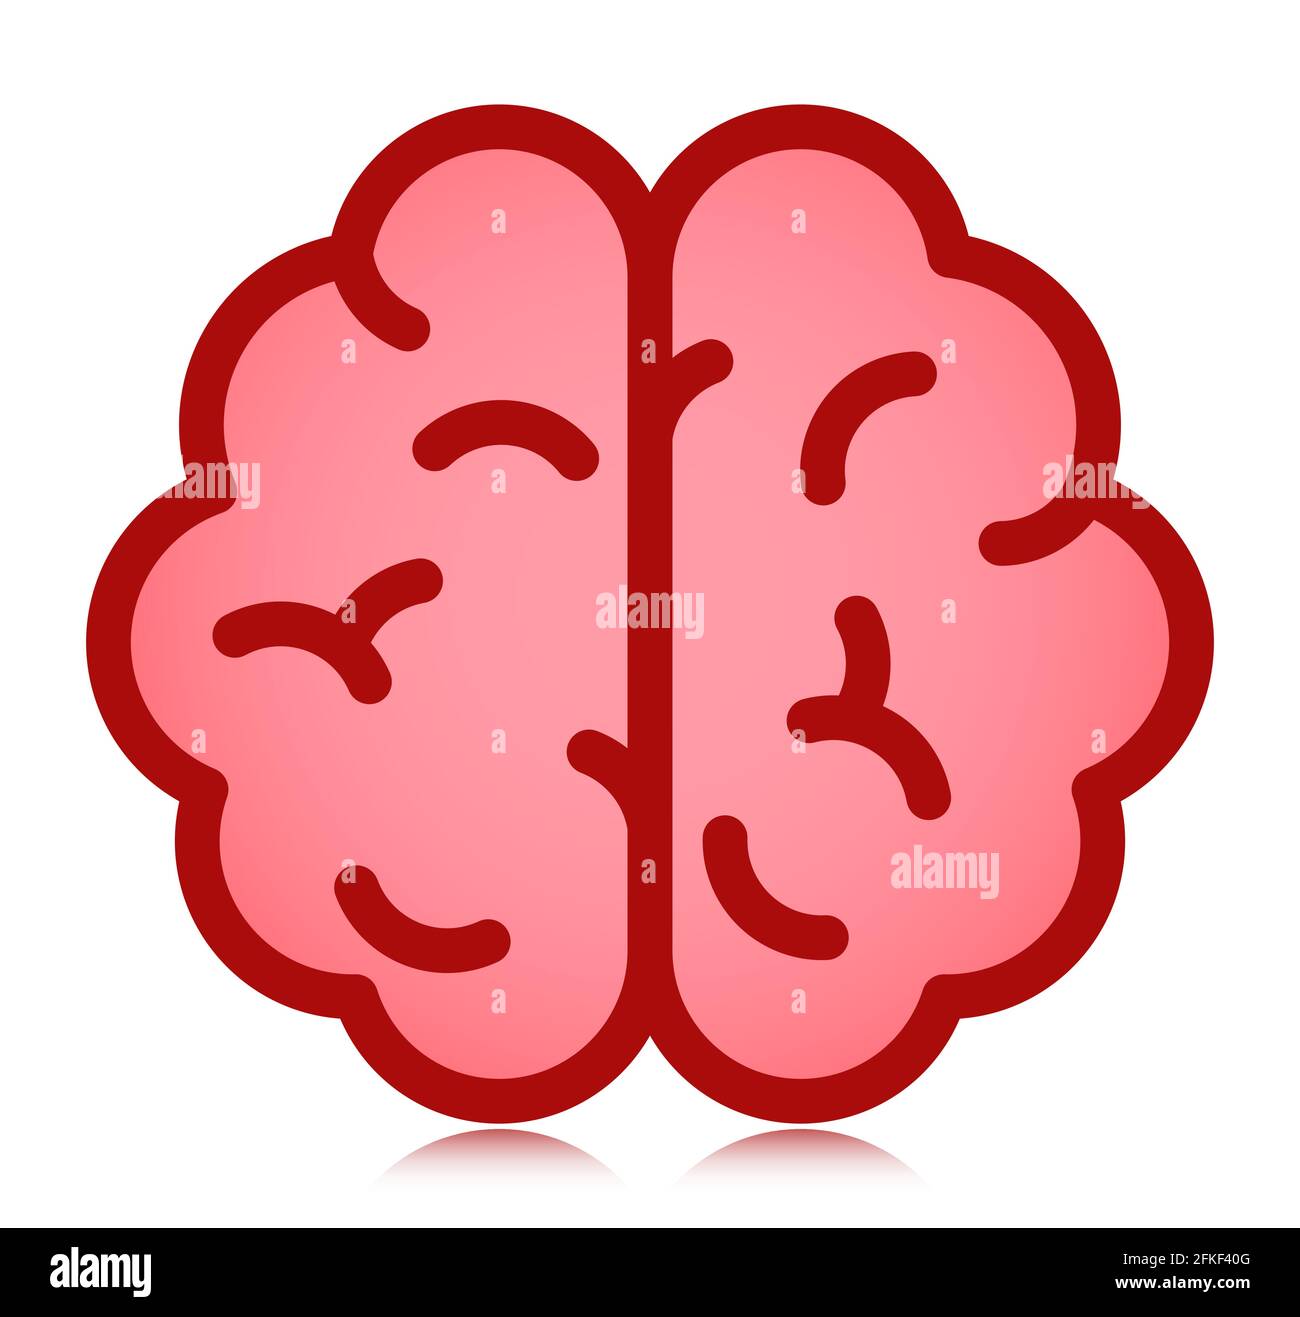 simbolo dell'immagine vettoriale dell'icona piatta del cervello umano Illustrazione Vettoriale